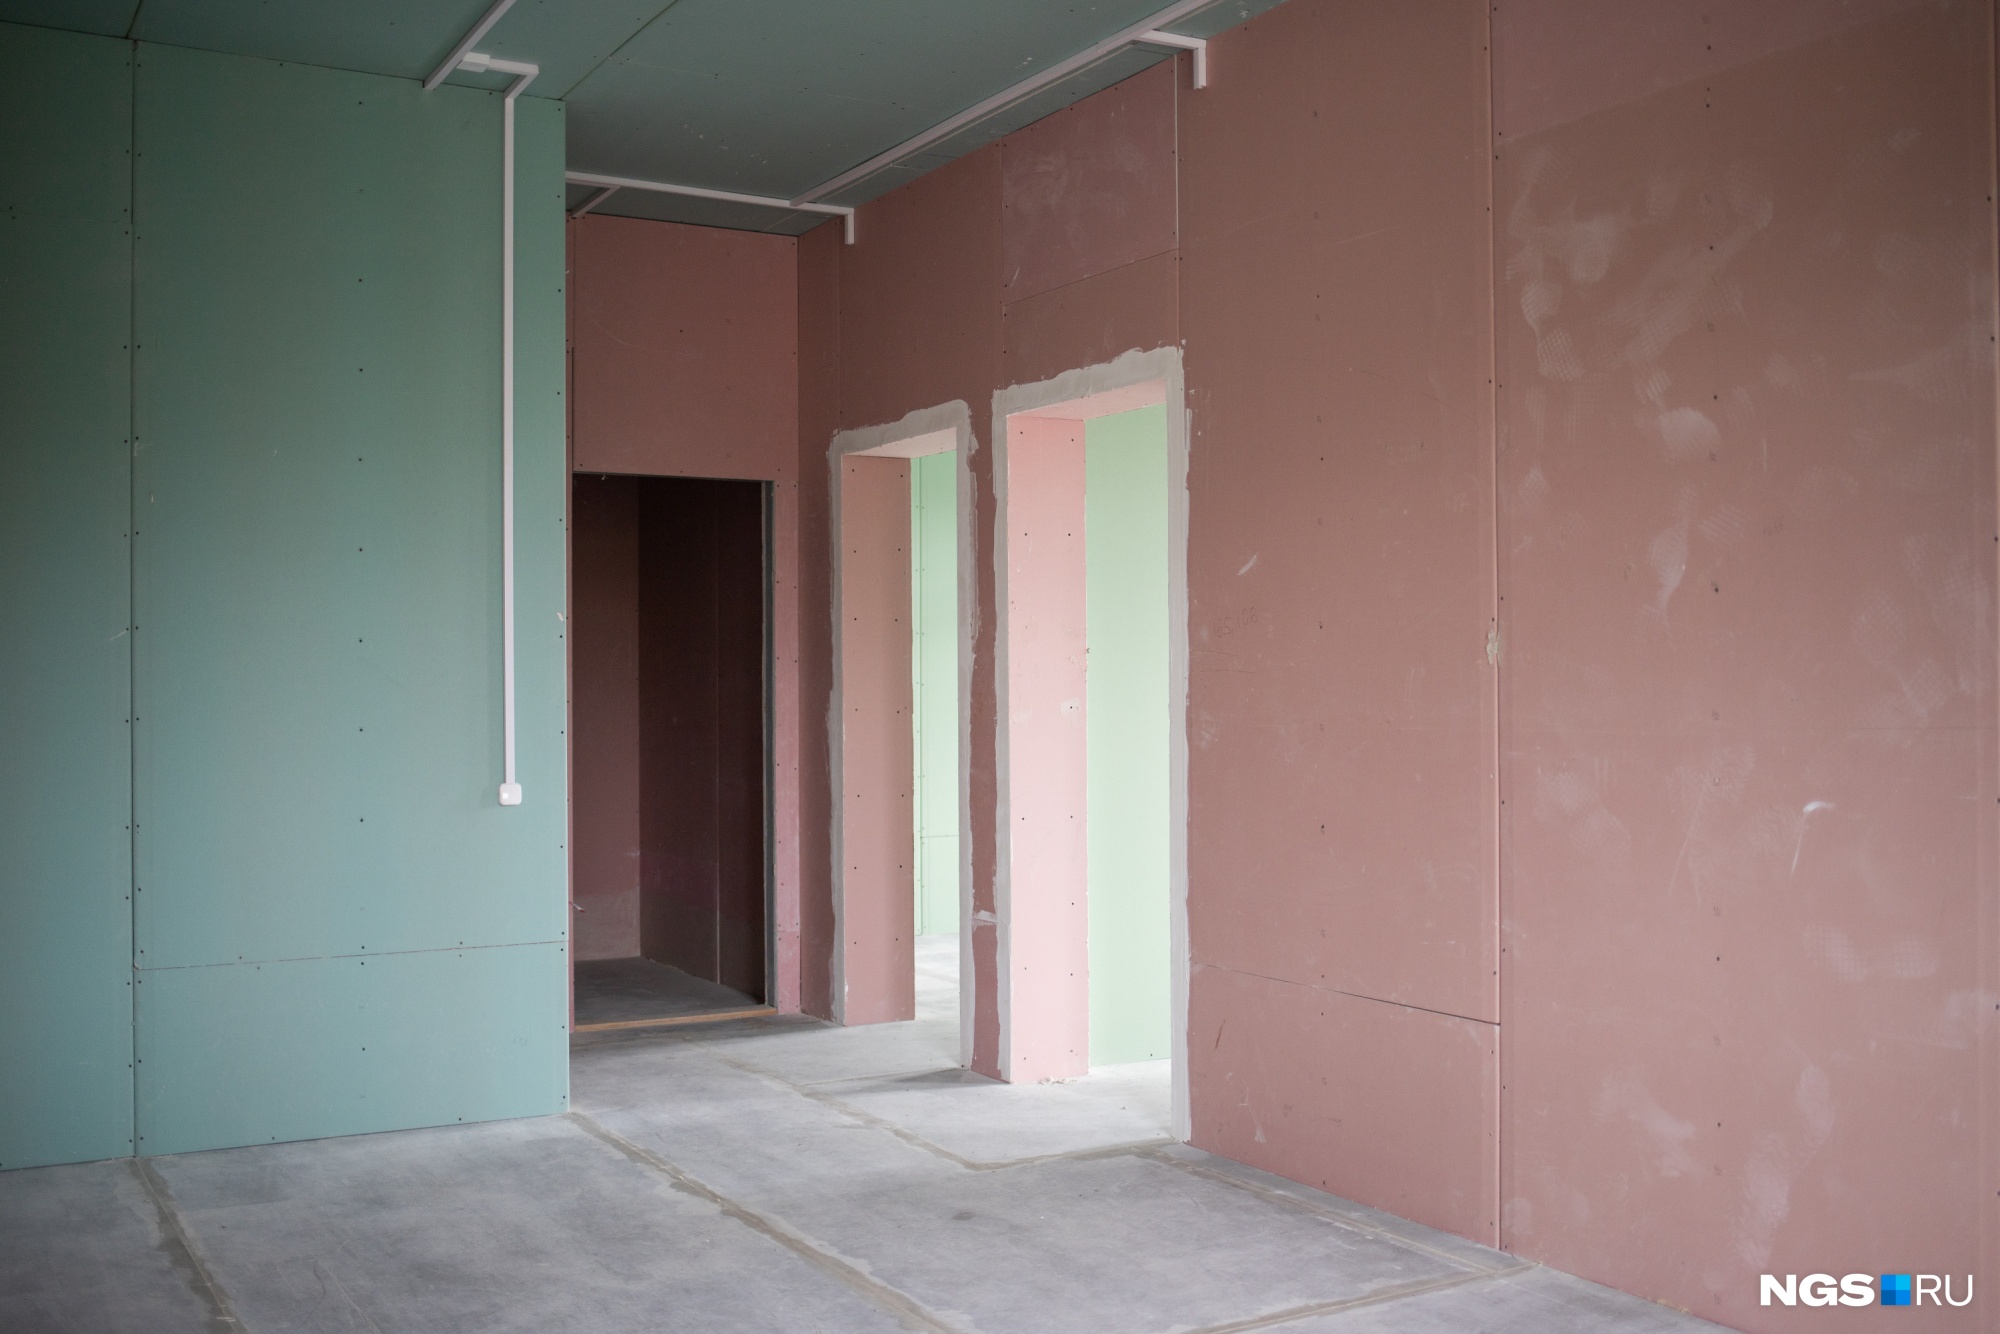 Квартиры фактически подготовлены для чистовой отделки: одна из составляющих стен — гипсокартон